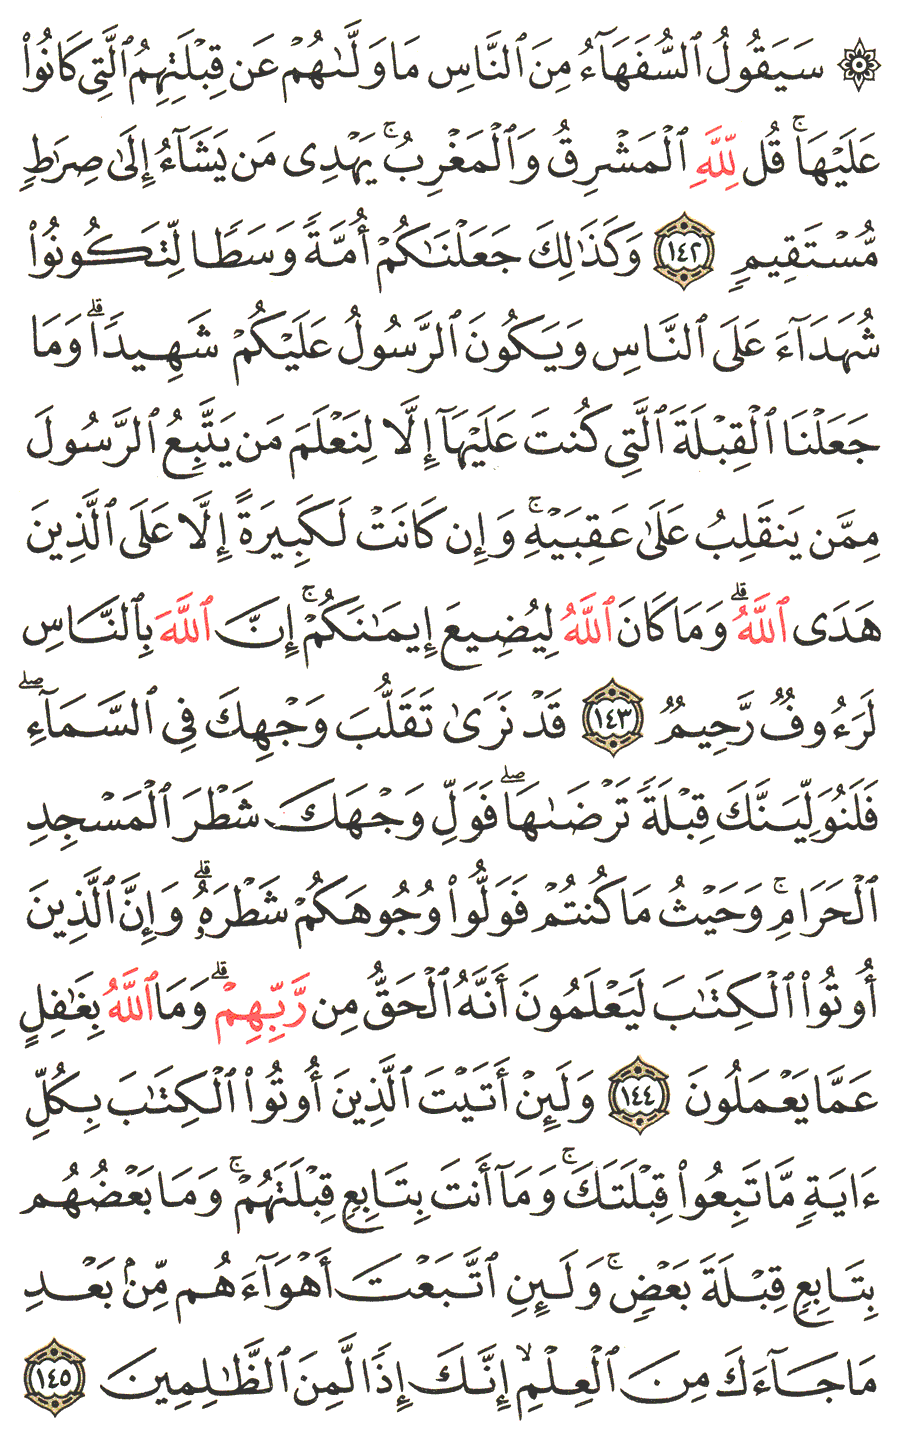 الصفحة رقم  22 من القرآن الكريم مكتوبة من المصحف